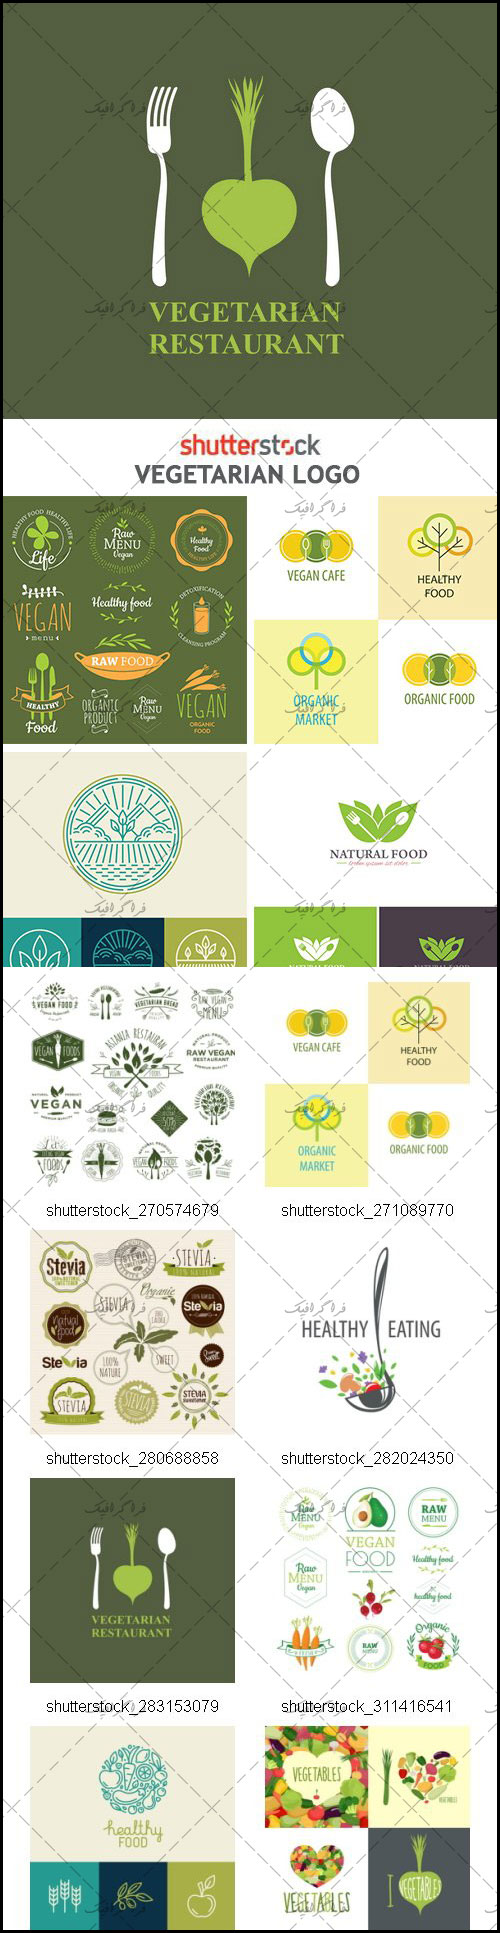 دانلود لوگو های گیاهخواری - Vegetarian Logos